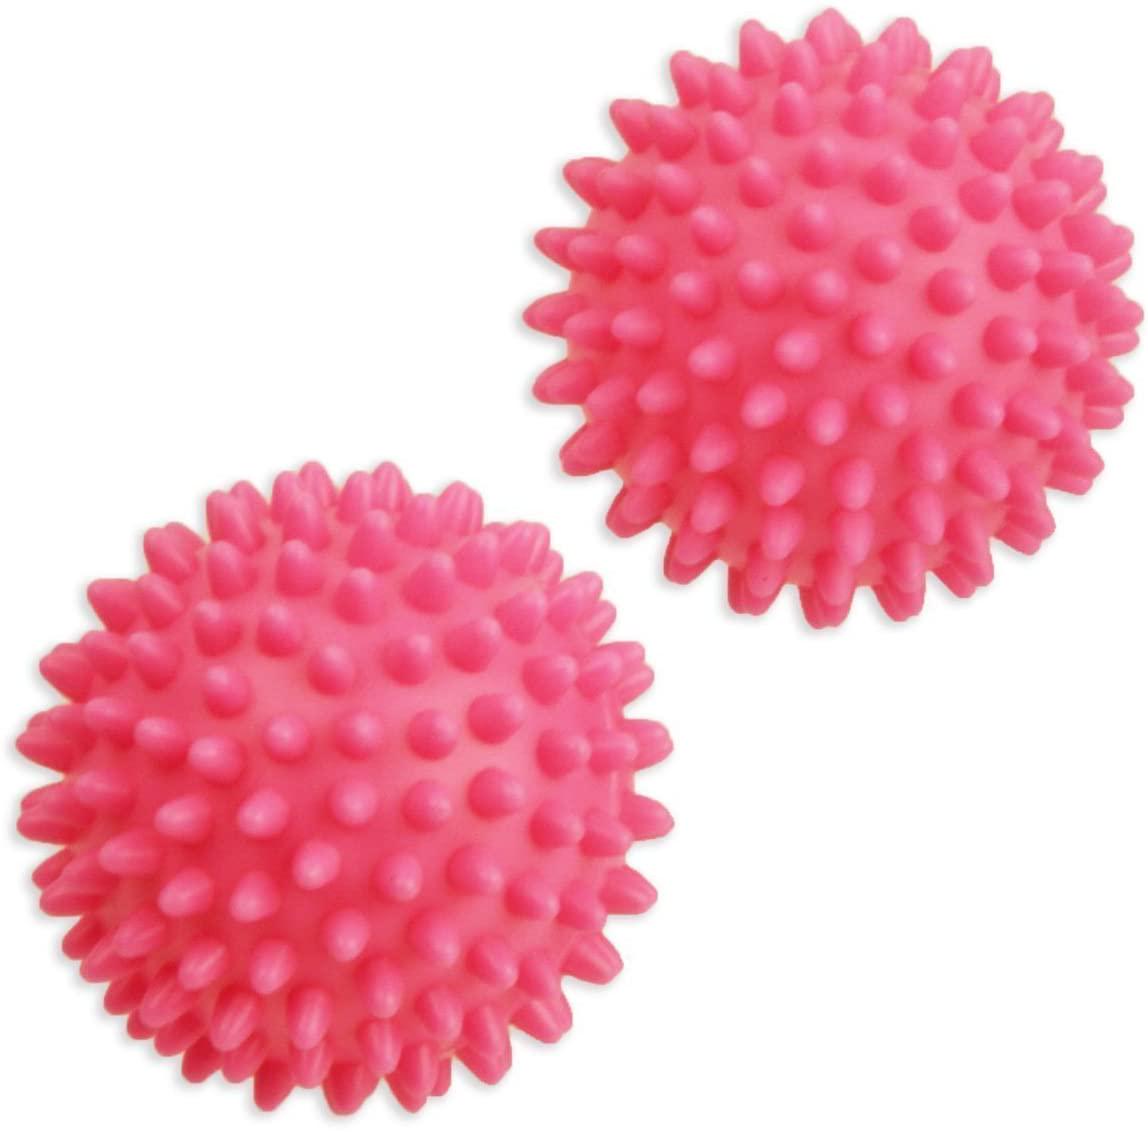 Шарики для стирки белья Dryer Balls 2 шт. Розовый (8a04cf43)